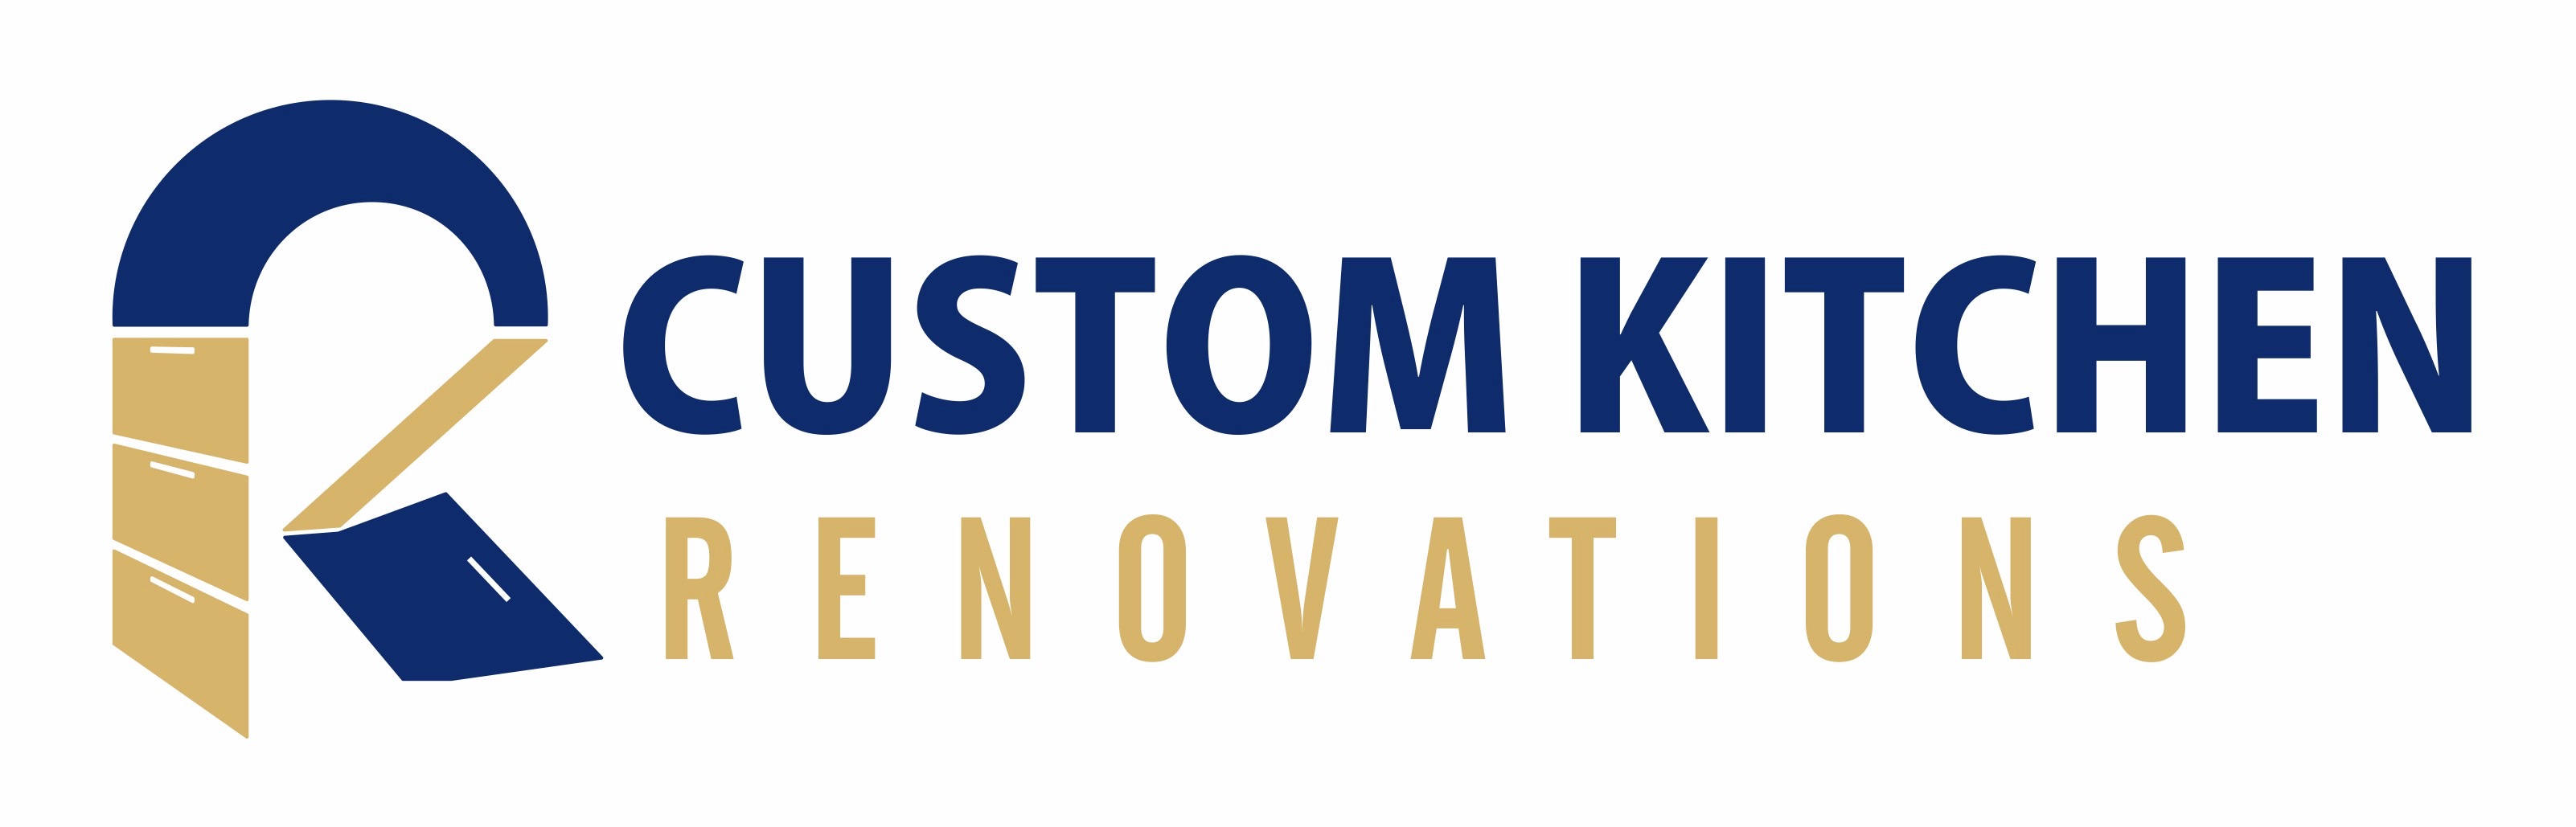 Custom Kitchen Renovations, LLC Logo